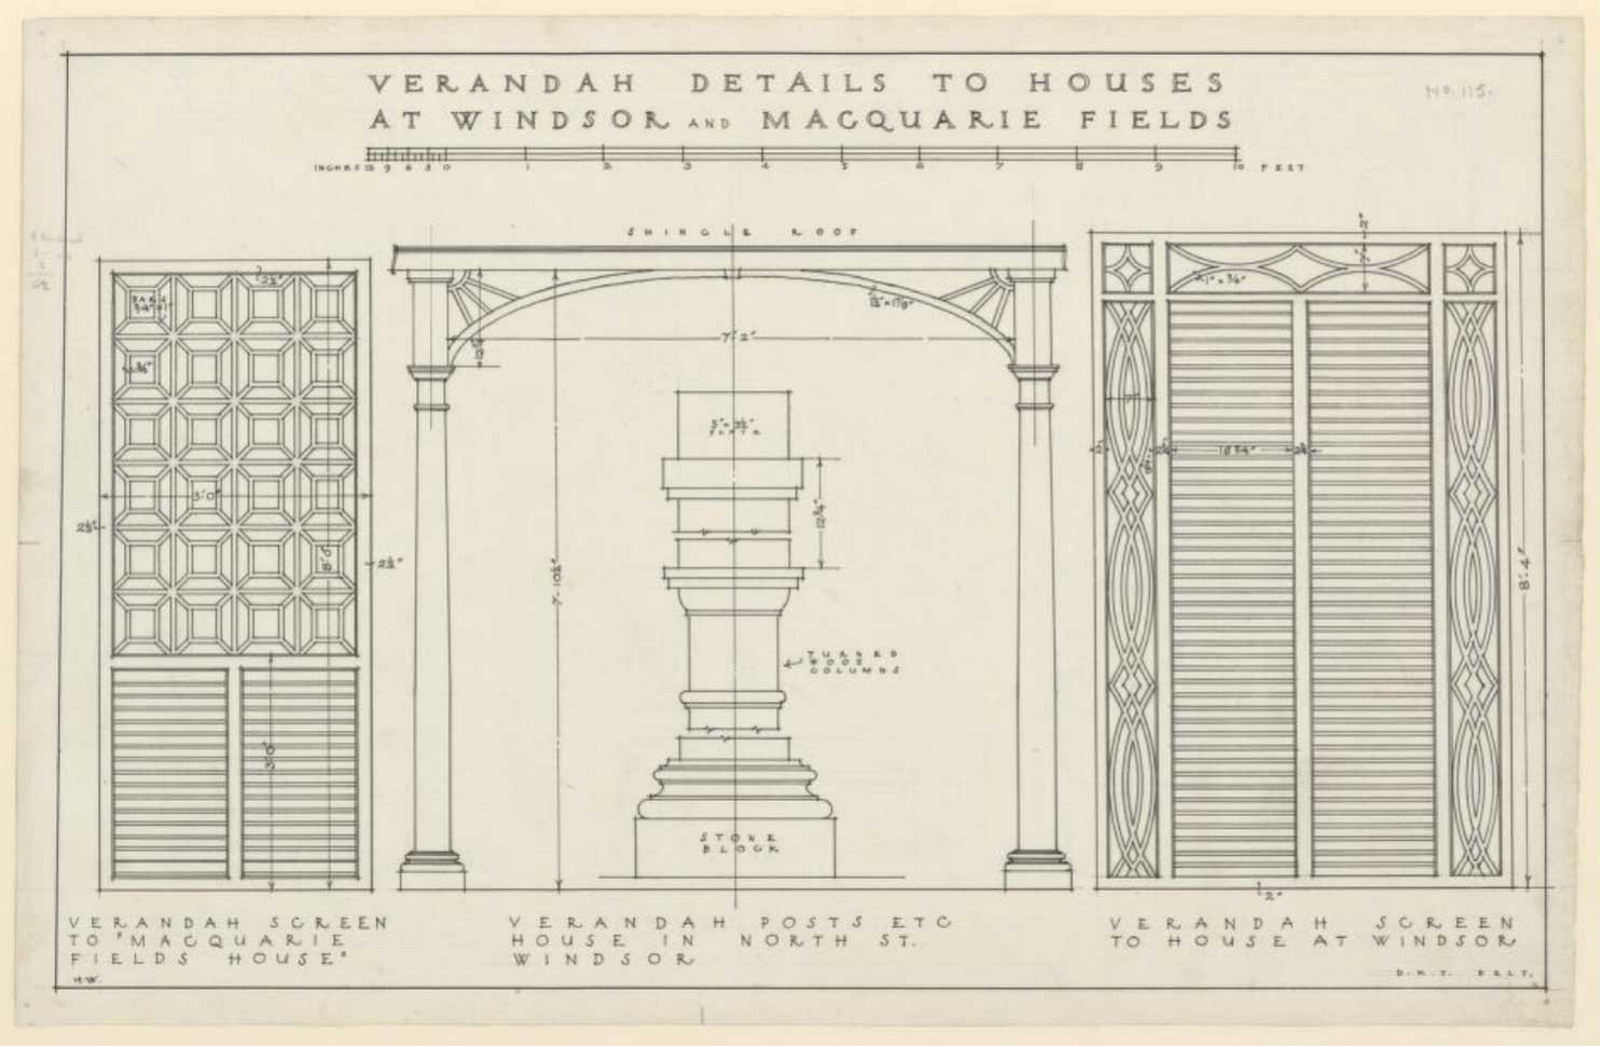 Diagrams of verandah designs.